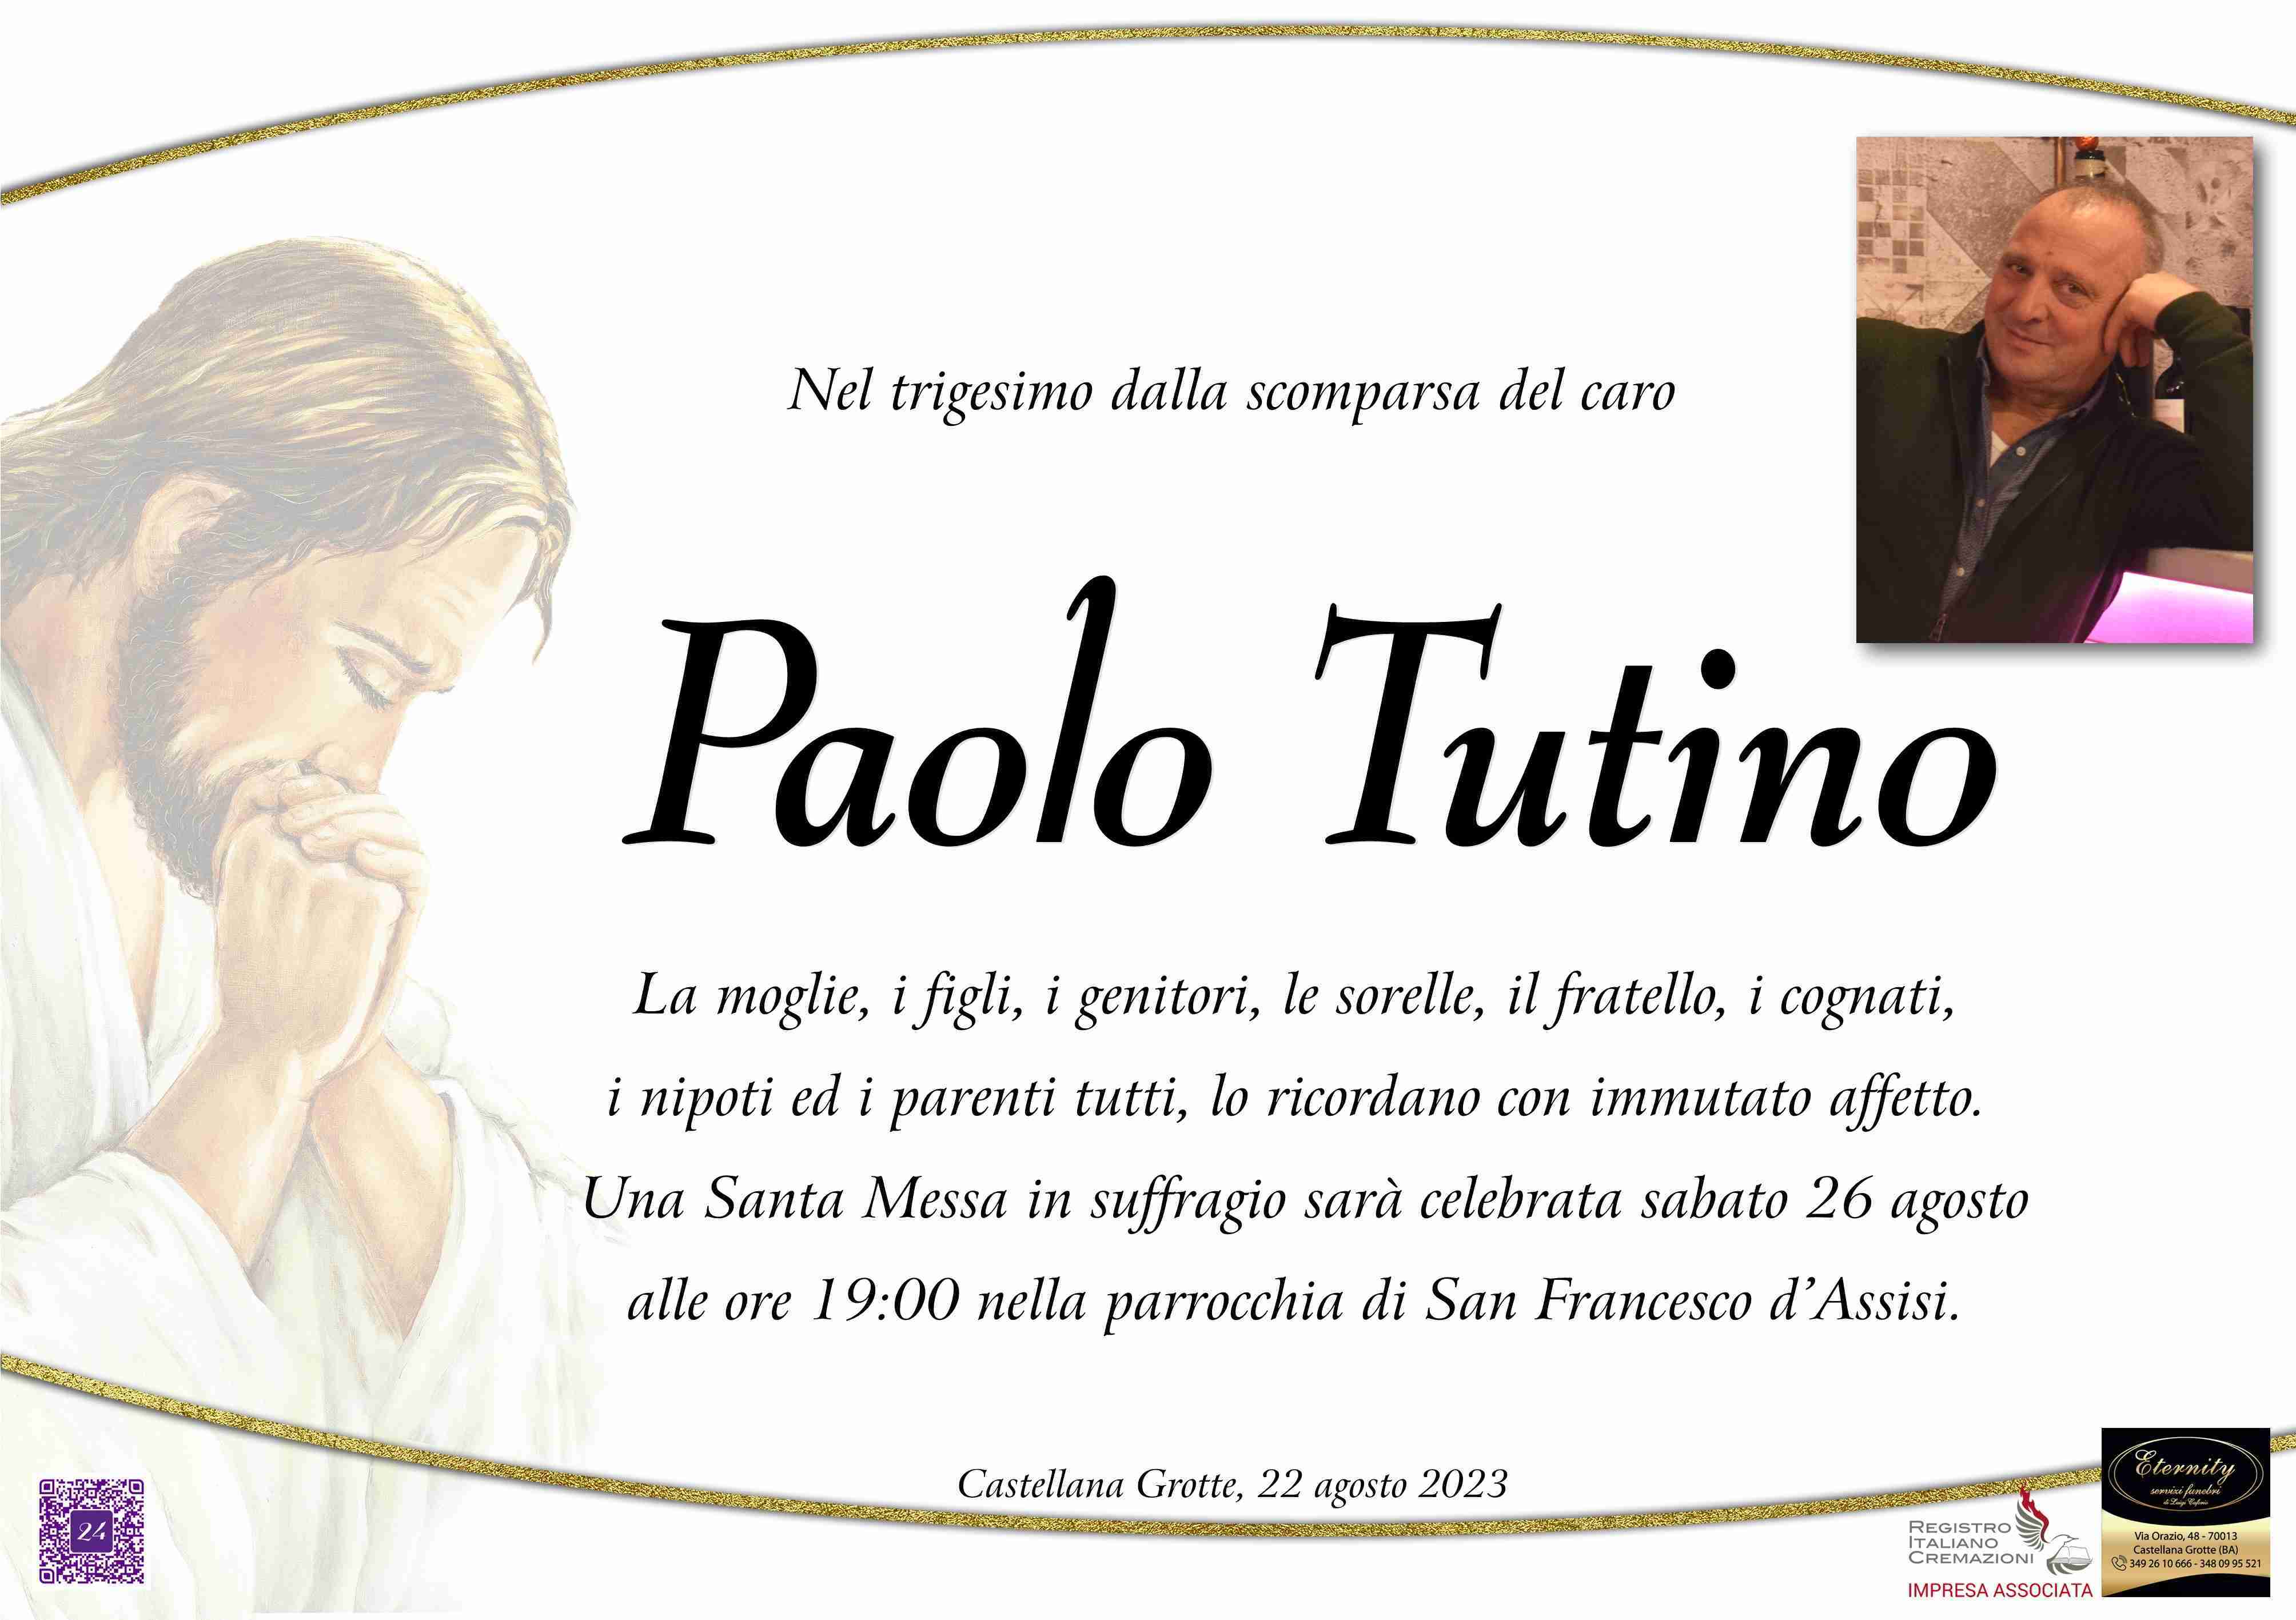 Paolo Tutino